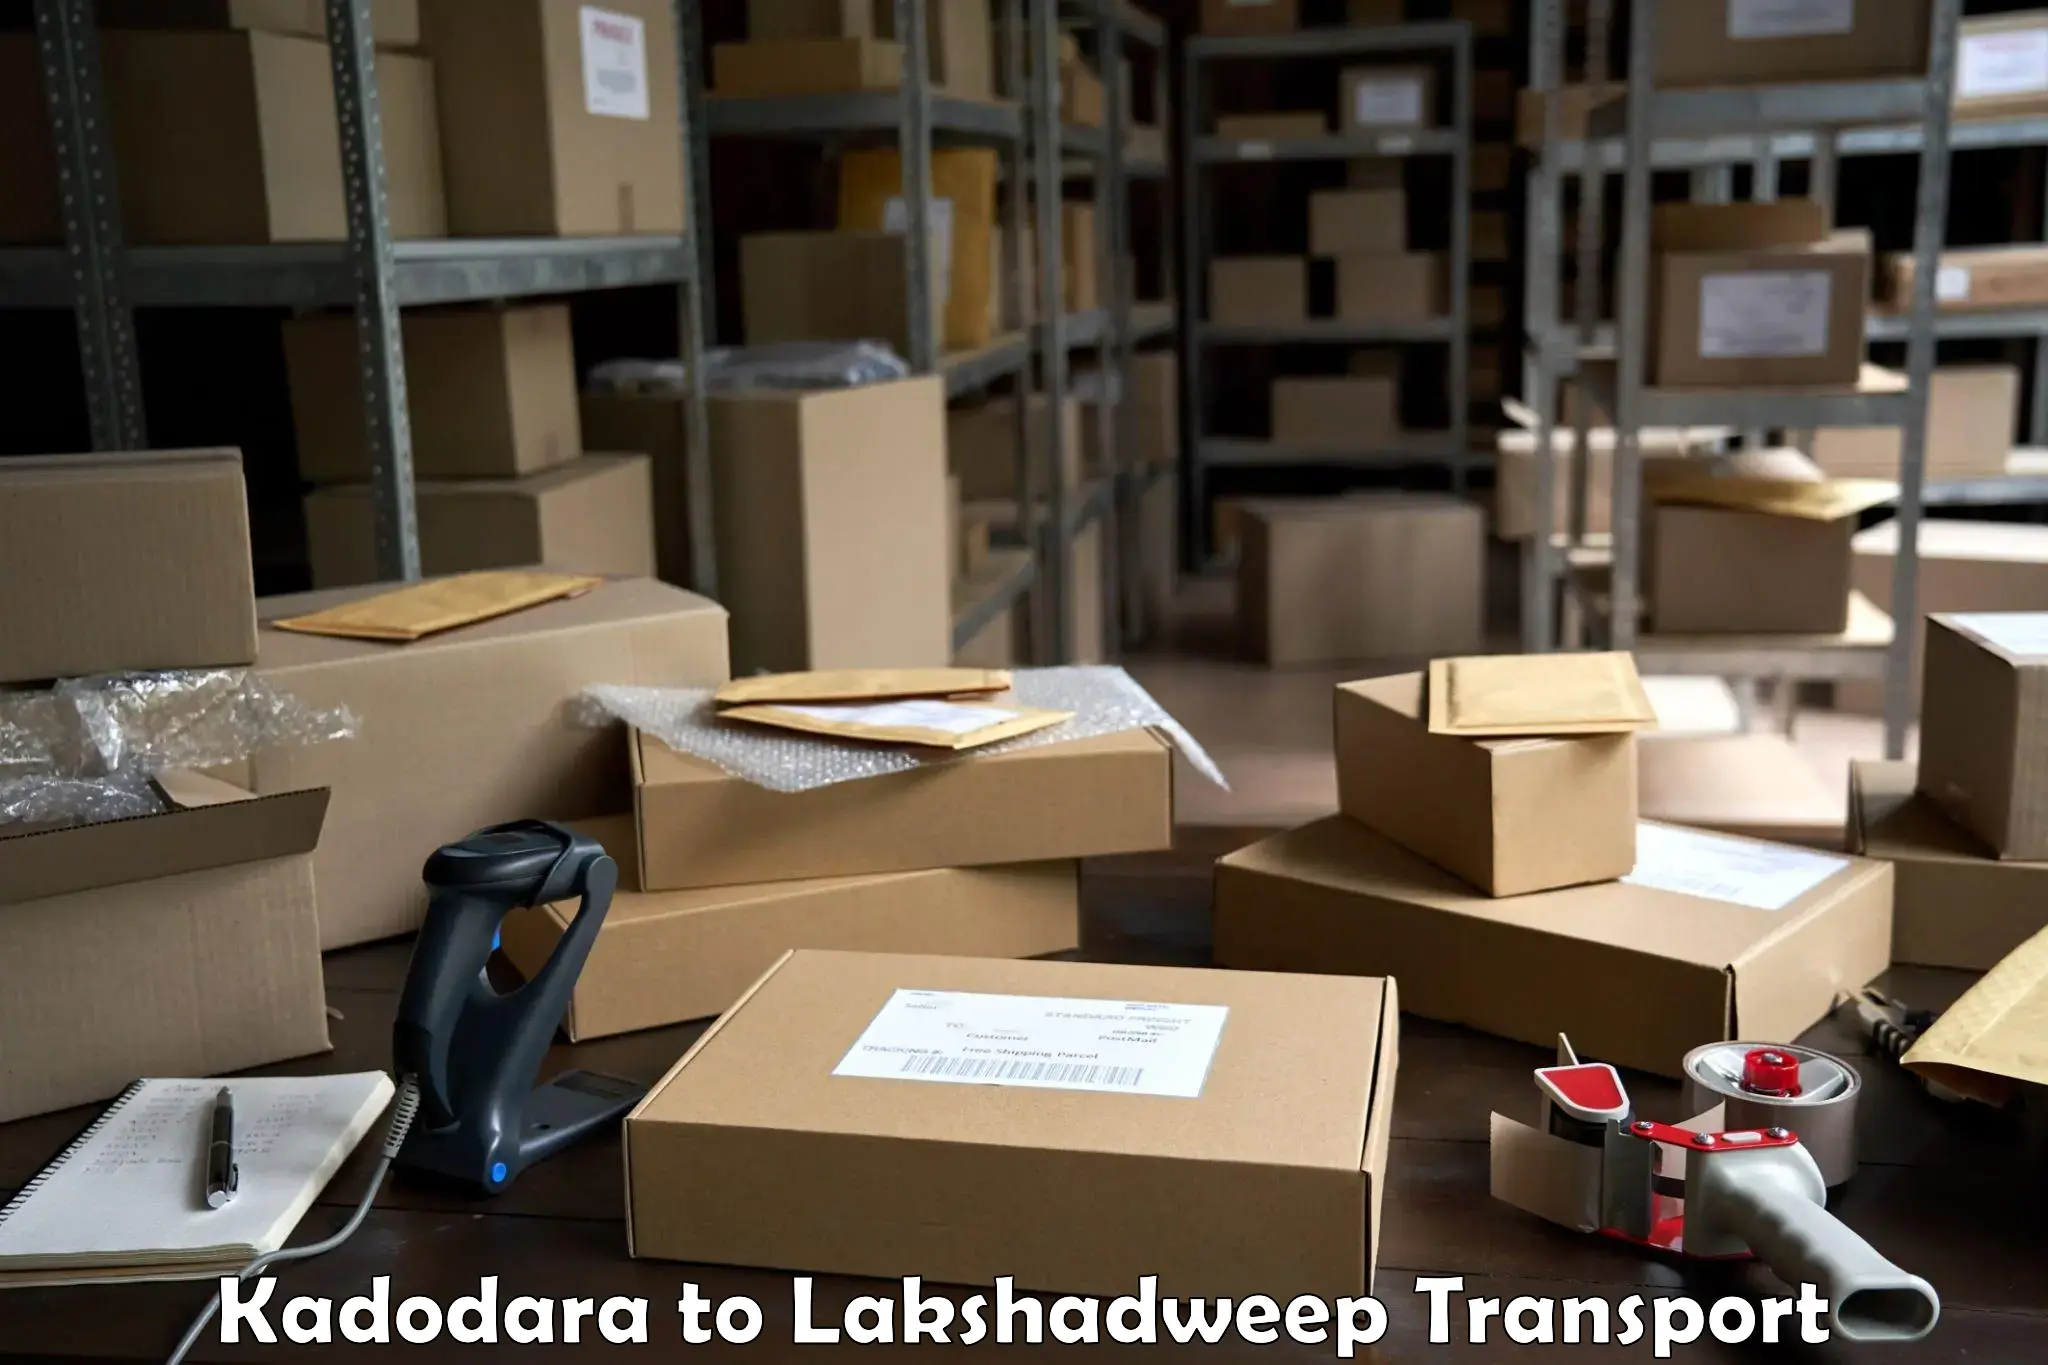 Bike transport service Kadodara to Lakshadweep